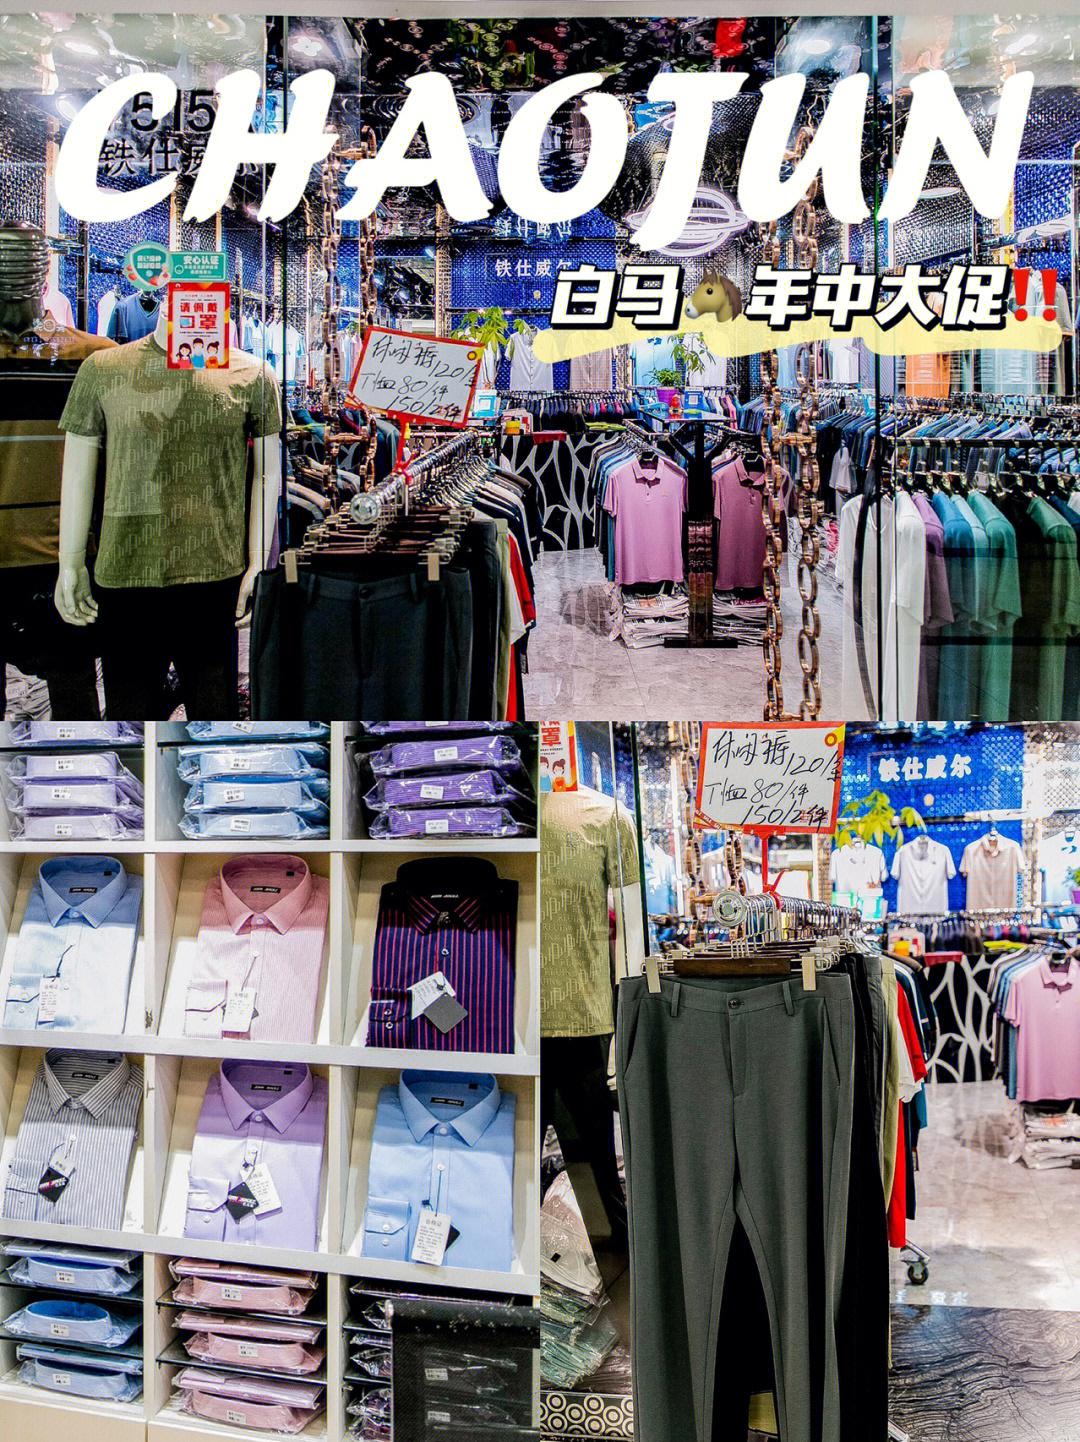 广州白马服装市场年中大促拿货批发价60